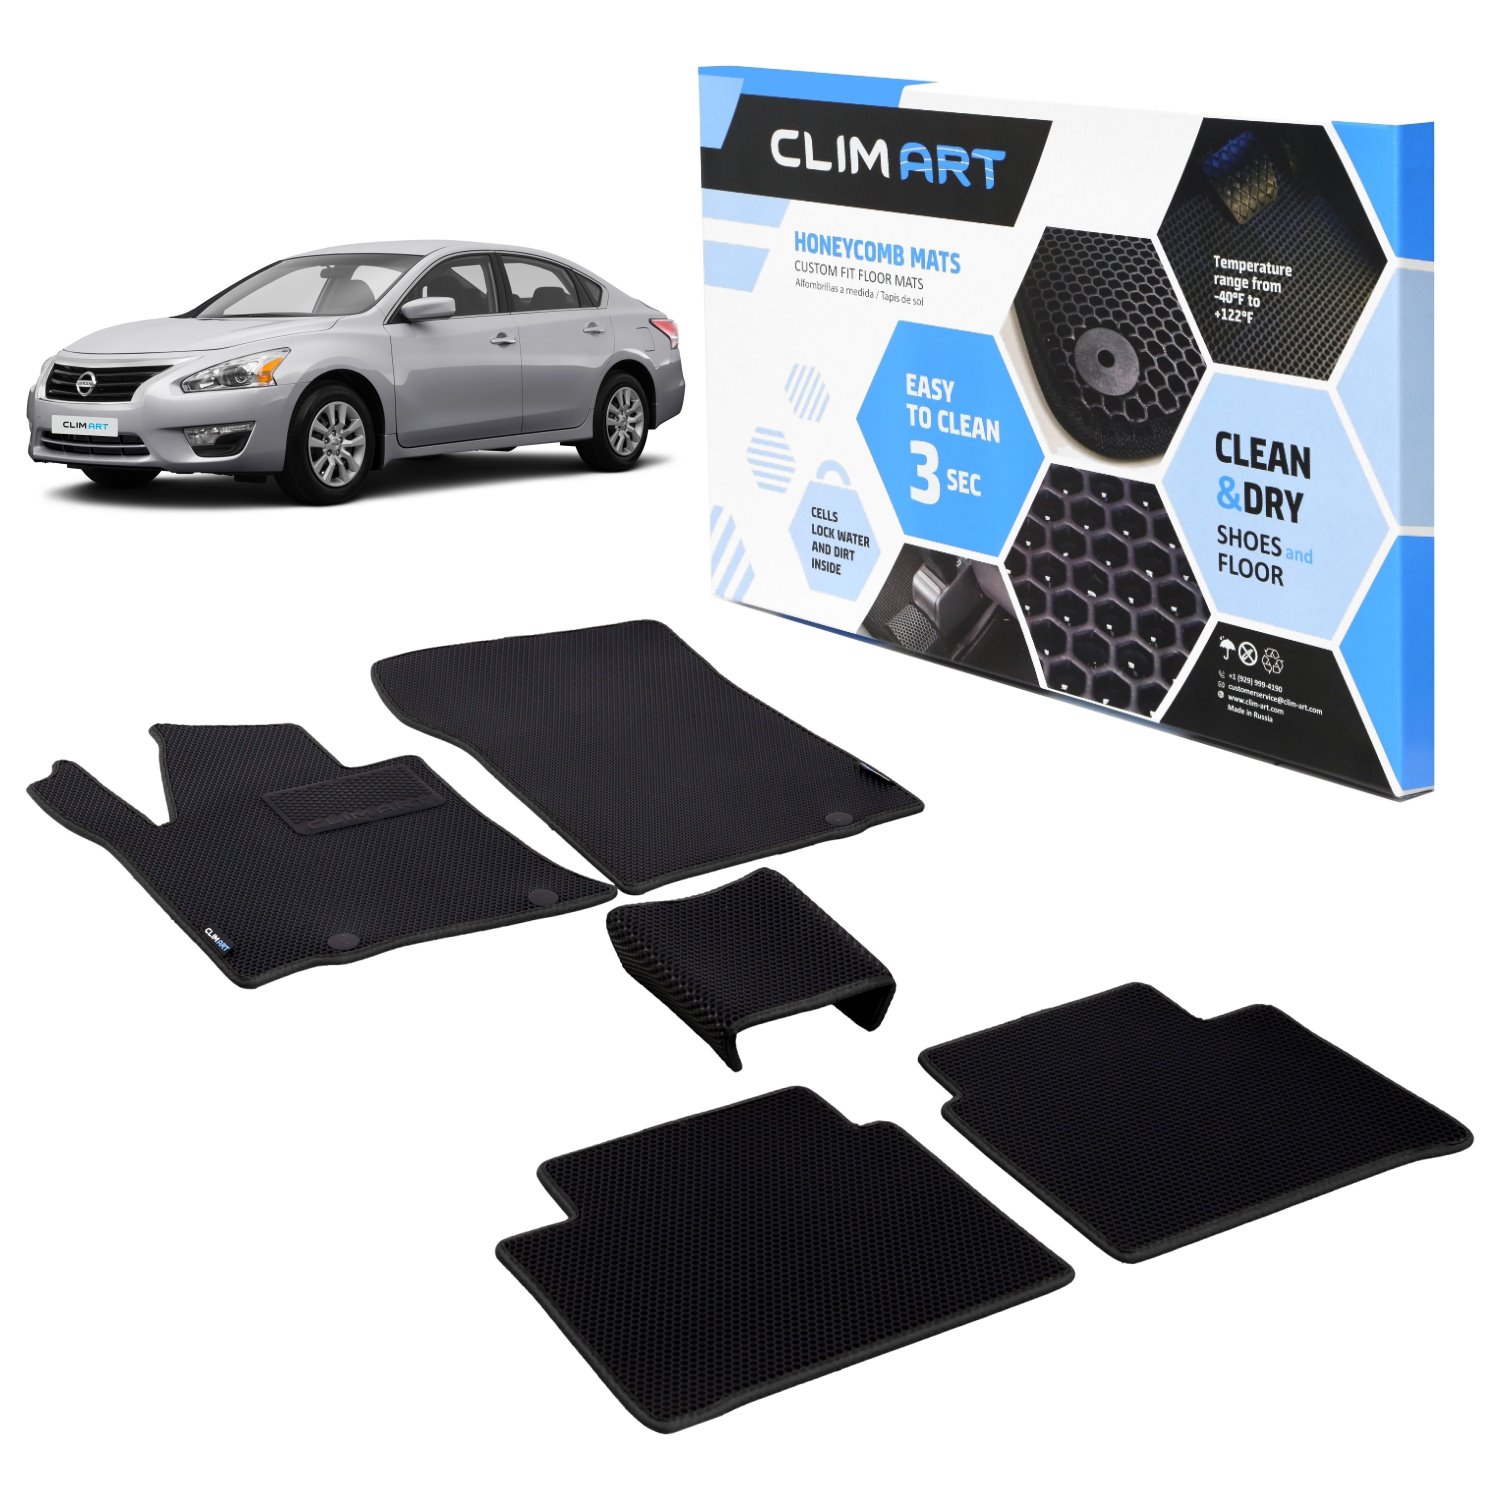 CLIM ART Honeycomb Custom Fit Floor Mats for 2013-2015 Nissan Altima